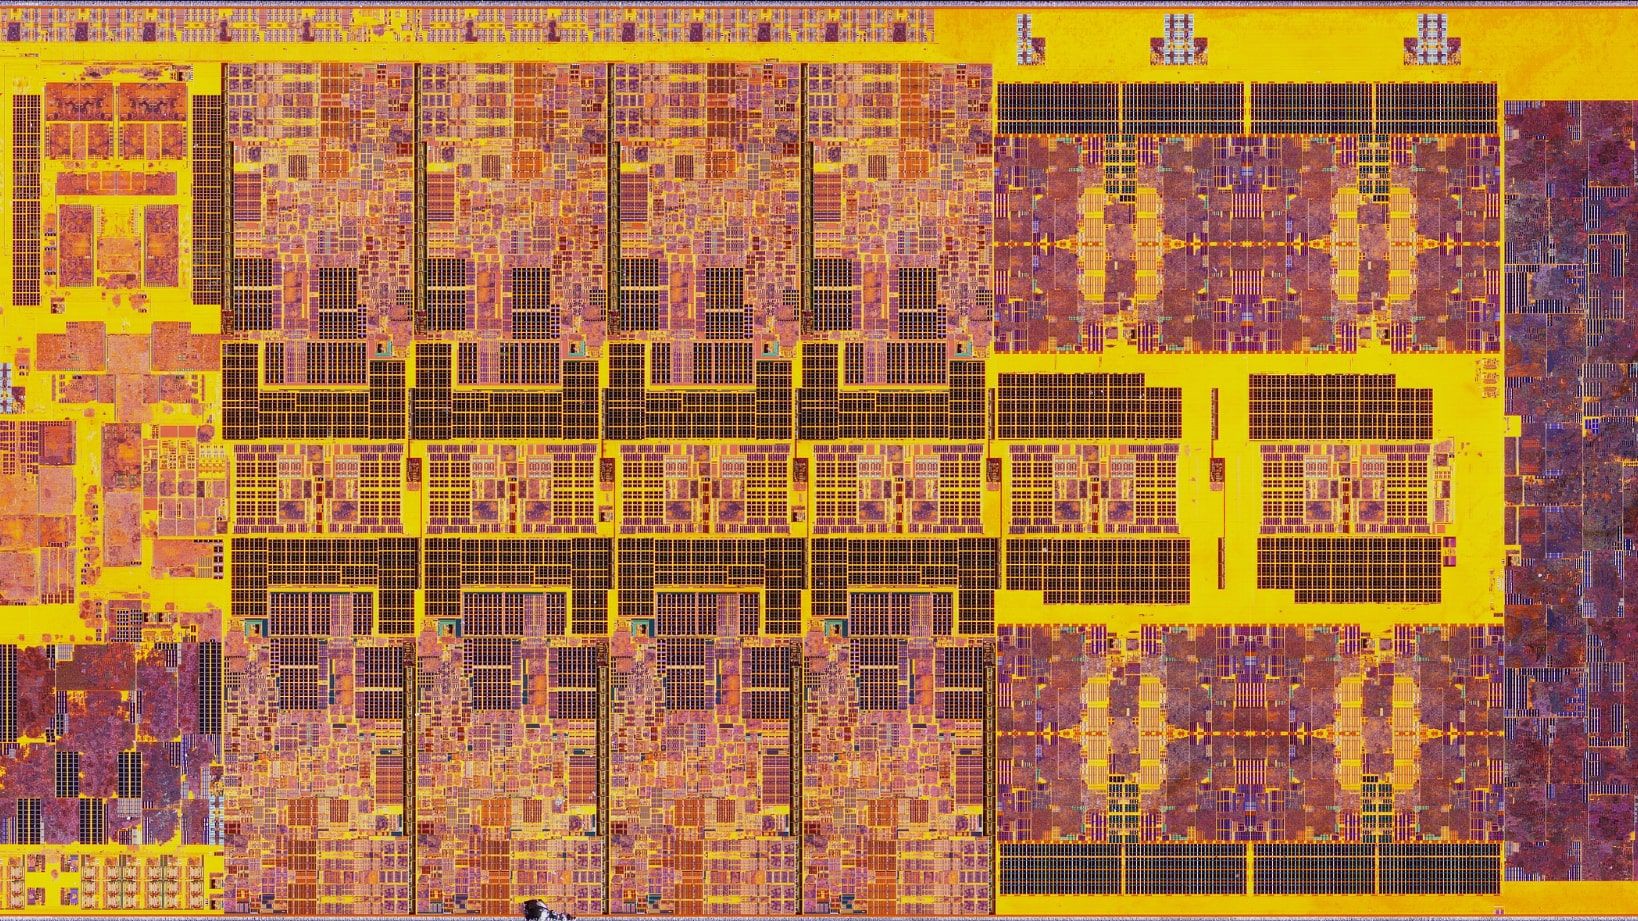 Mời bạn chiêm ngưỡng đỉnh cao của công nghệ vi xử lý với hình chụp die Intel Core i9-13900K đẹp hút hồn